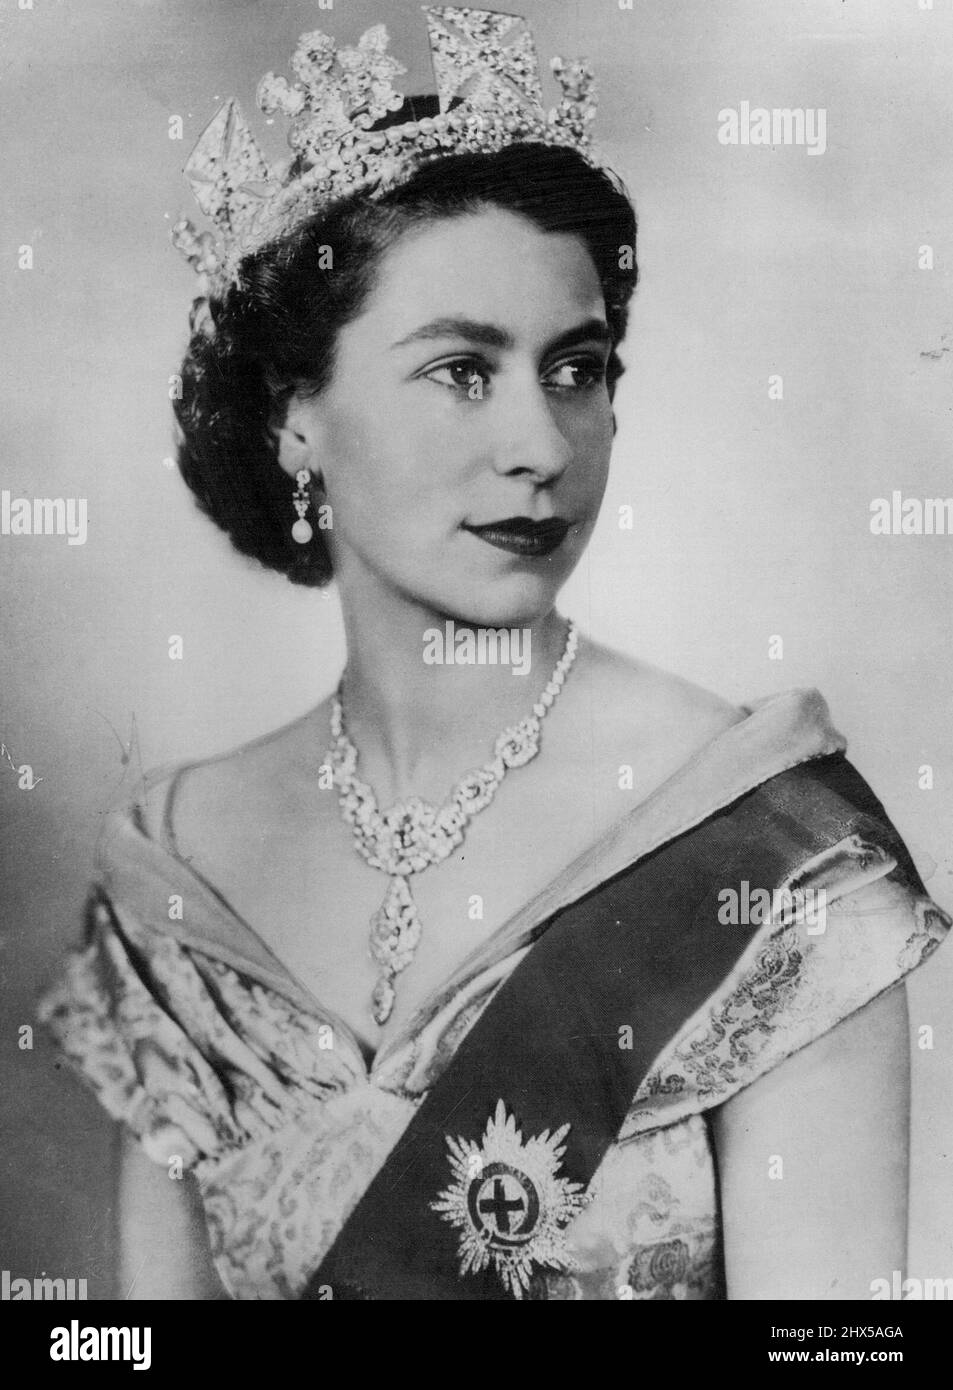 Das erste Porträt der Königin seit ihrer Aufnahme in der ersten formalen Porträtstudie, die seit ihrer Thronbesteigung aufgenommen wurde, ist Ihre Majestät Königin Elisabeth II. In einem Kleid aus Elfenbeinbrokat mit Gold- und Türkisfaden und einem Ausschnitt aus schwarzem Samt zu sehen. Sie trägt die Schärpe und den Stern des Strumpfordens, die Halskette, die ihr als Hochzeitsgeschenk vom Nizam von Hyderabad geschenkt wurde, und einen Ring aus Diamanten und Perlen. 8. Juli 1952. Stockfoto